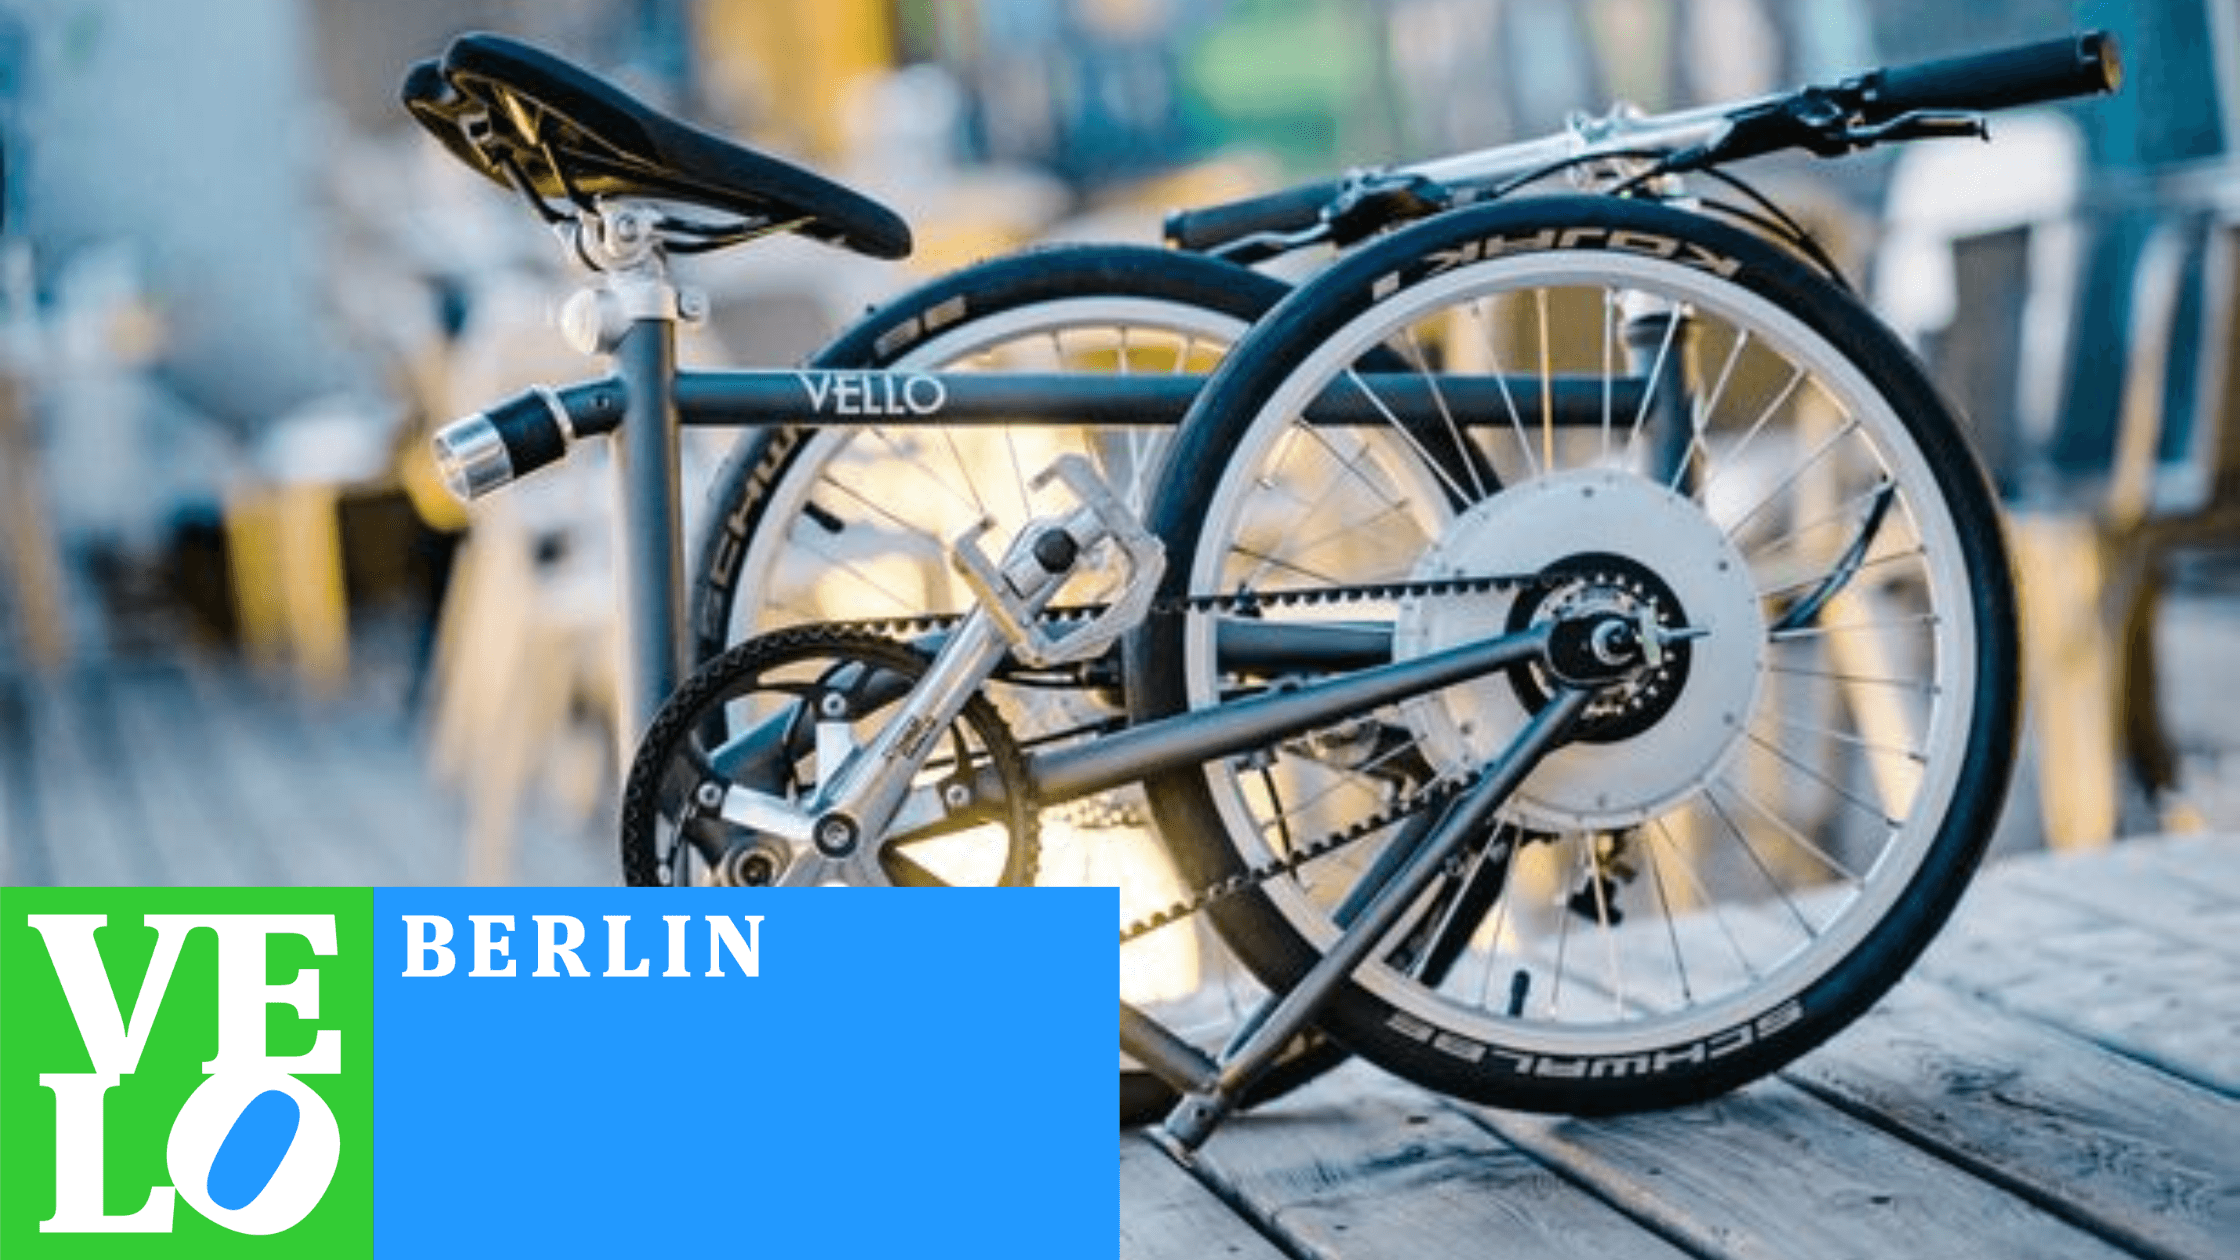 VELLO bike at VELO BERLIN